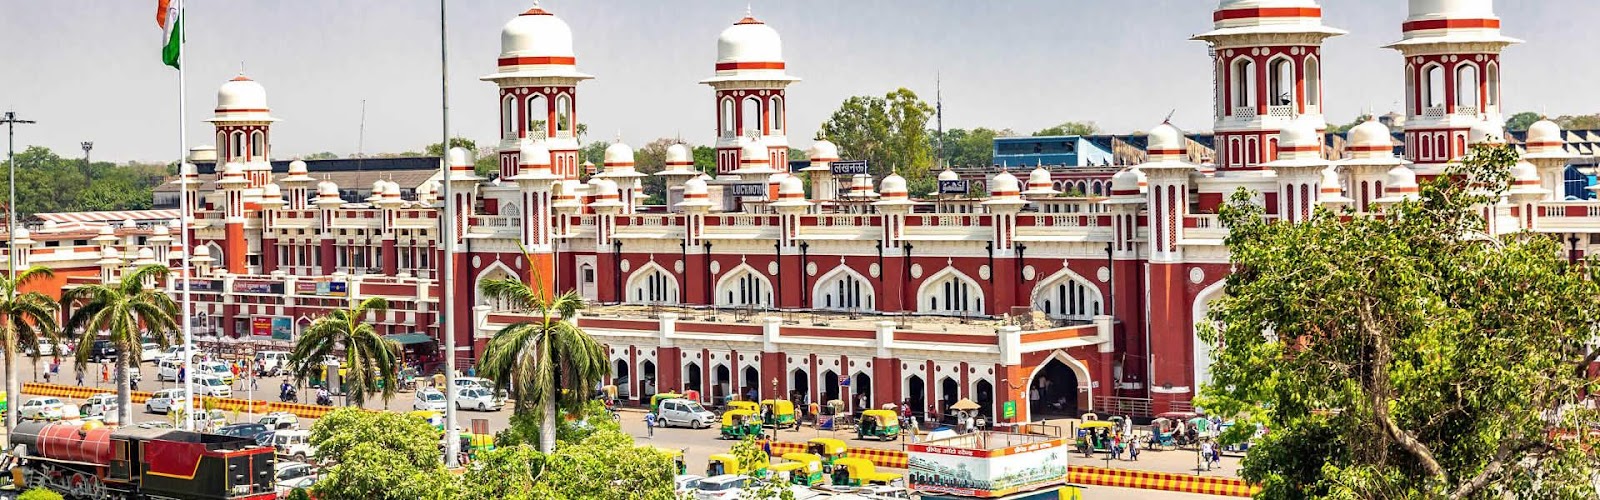 7 Best Digital Marketing Institutes in Lucknow